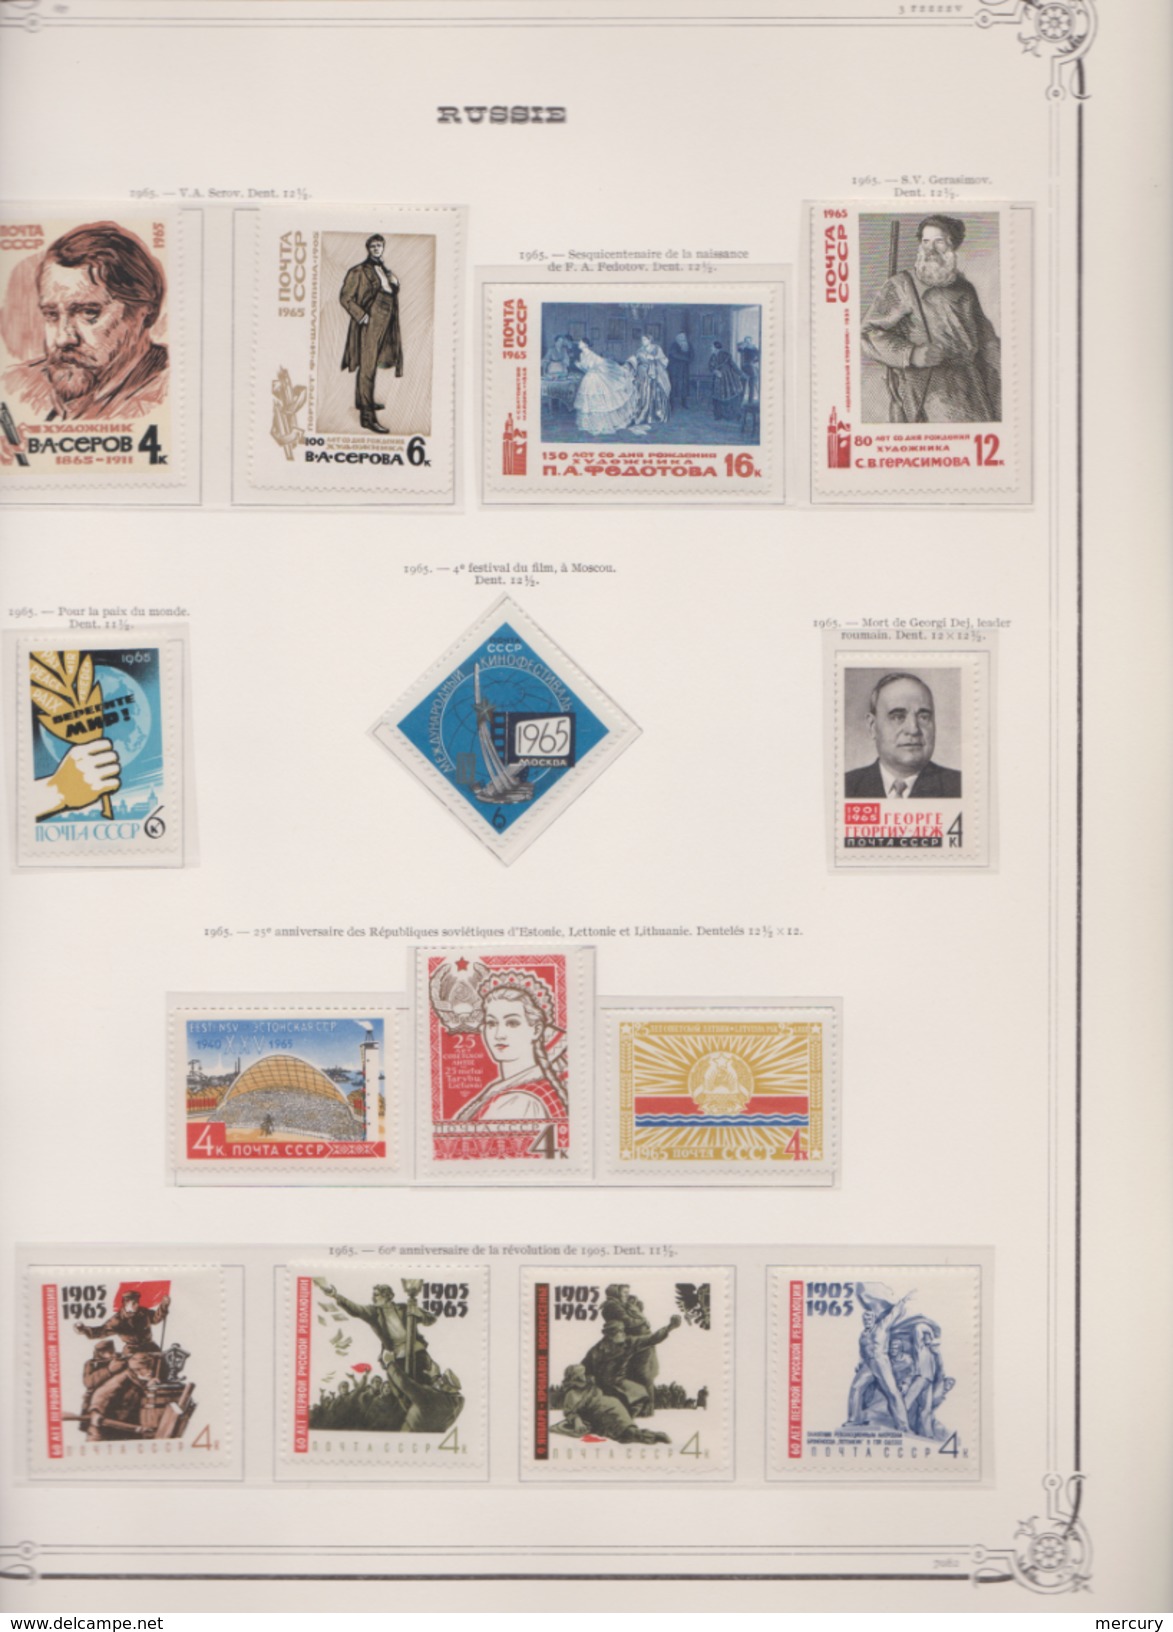 RUSSIE - Collection poste entre 1960 et 1992 - 99 scans